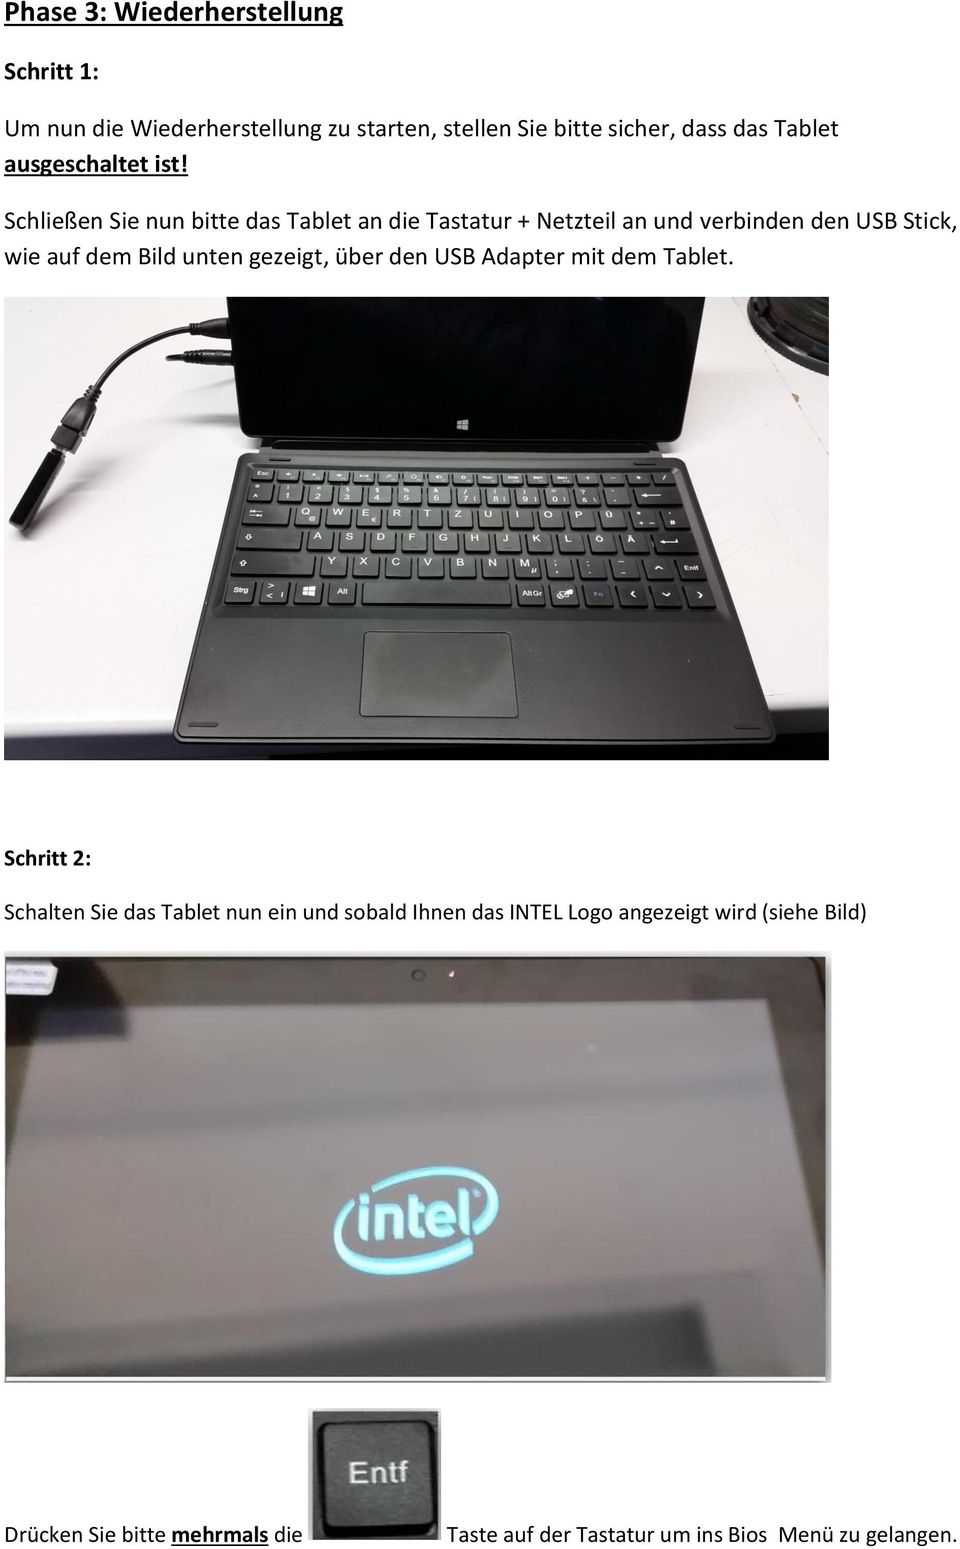 Schließen Sie nun bitte das Tablet an die Tastatur + Netzteil an und verbinden den USB Stick, wie auf dem Bild unten